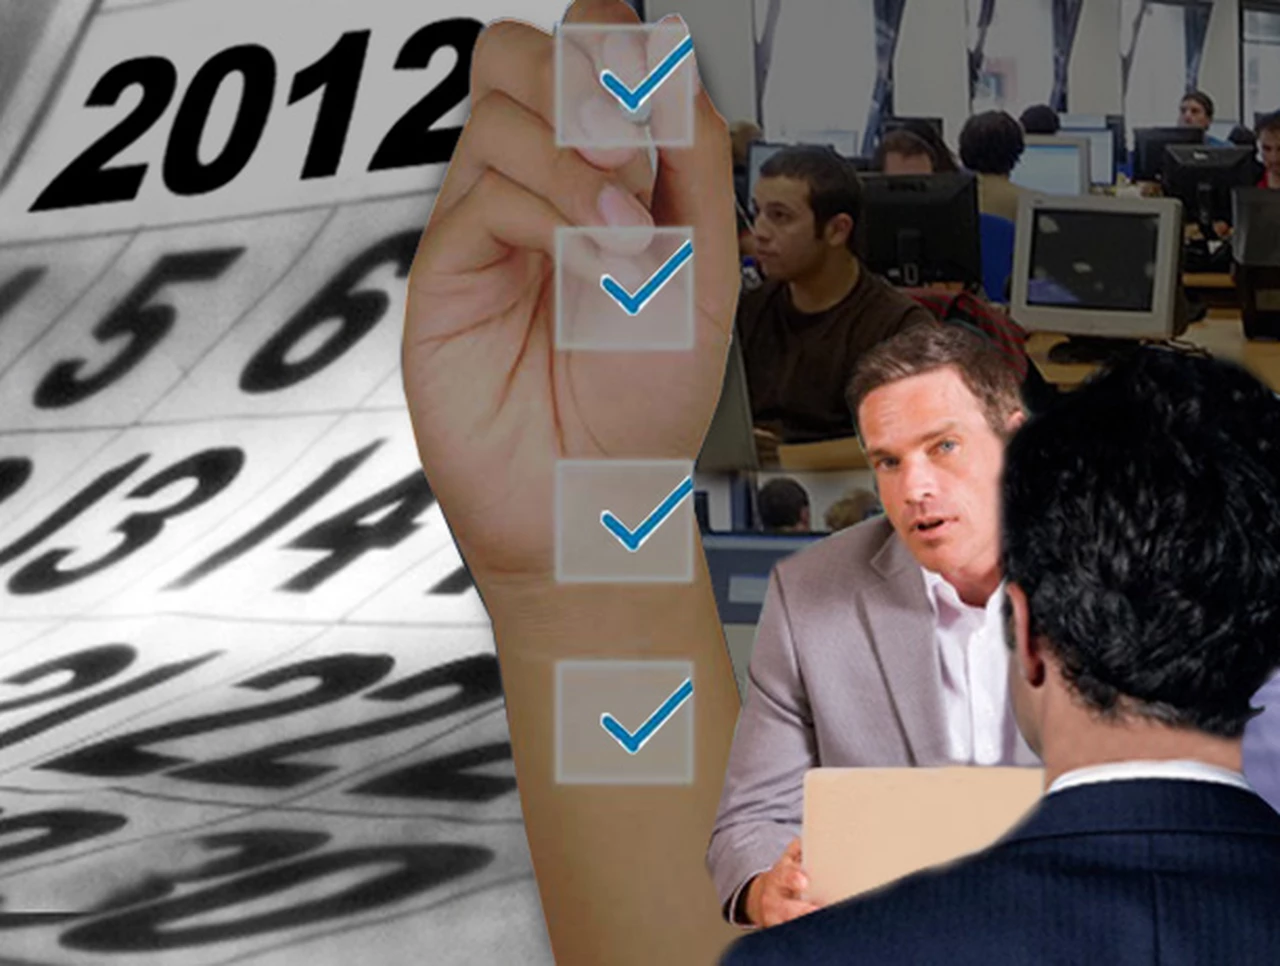 Si en 2012 usted quiere cambiar de trabajo, los expertos le detallan las 10 claves que debe conocer